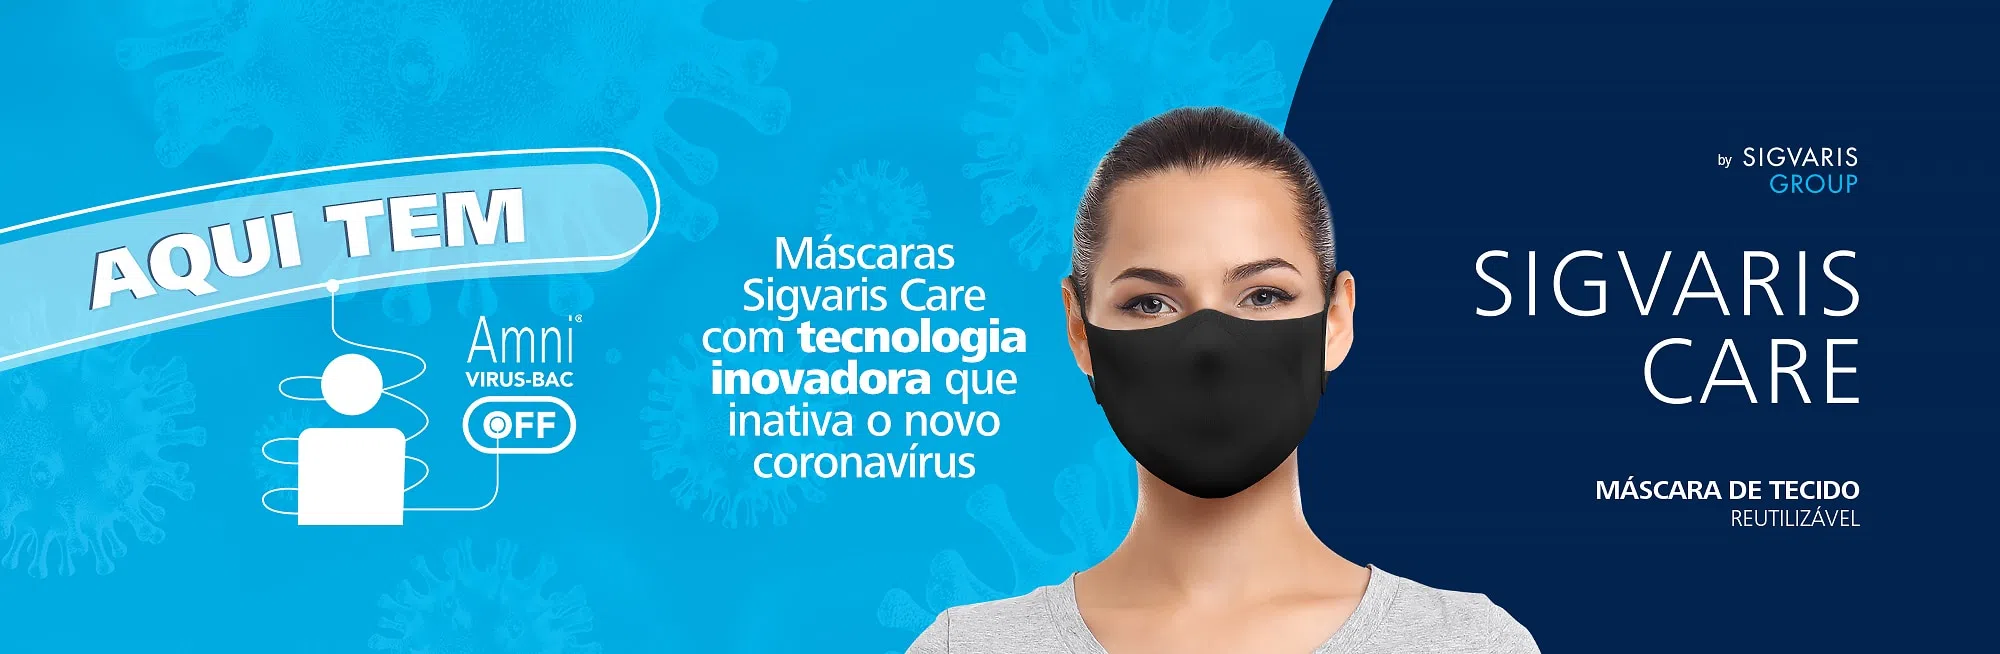 Lançamento_Mascaras